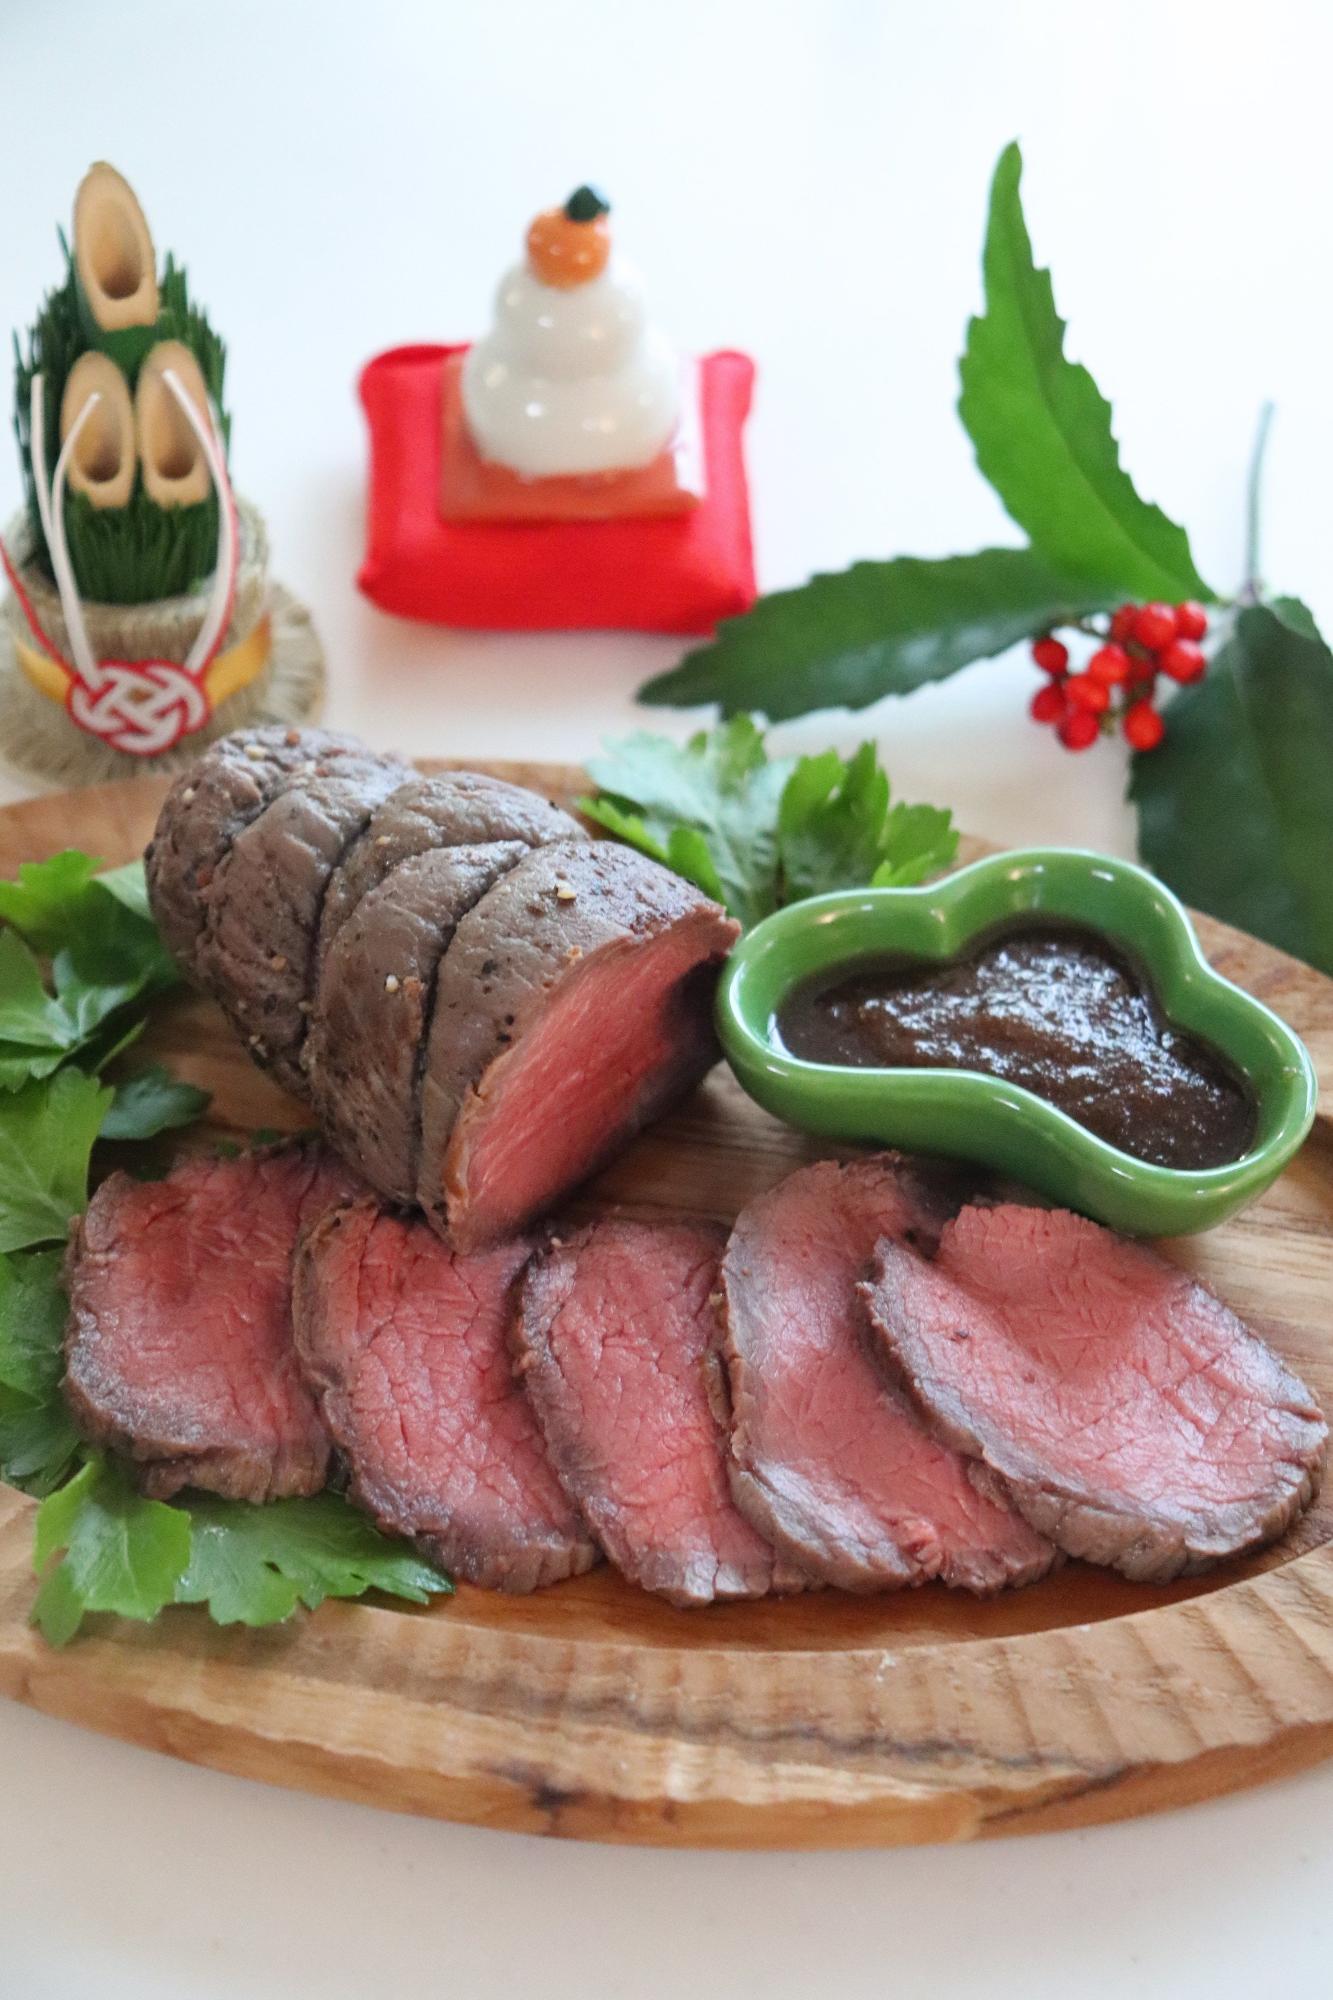 調理師おすすめno 1のローストビーフ 1時間で食べられる秘密の調理法 Rii Yahoo Japan クリエイターズプログラム